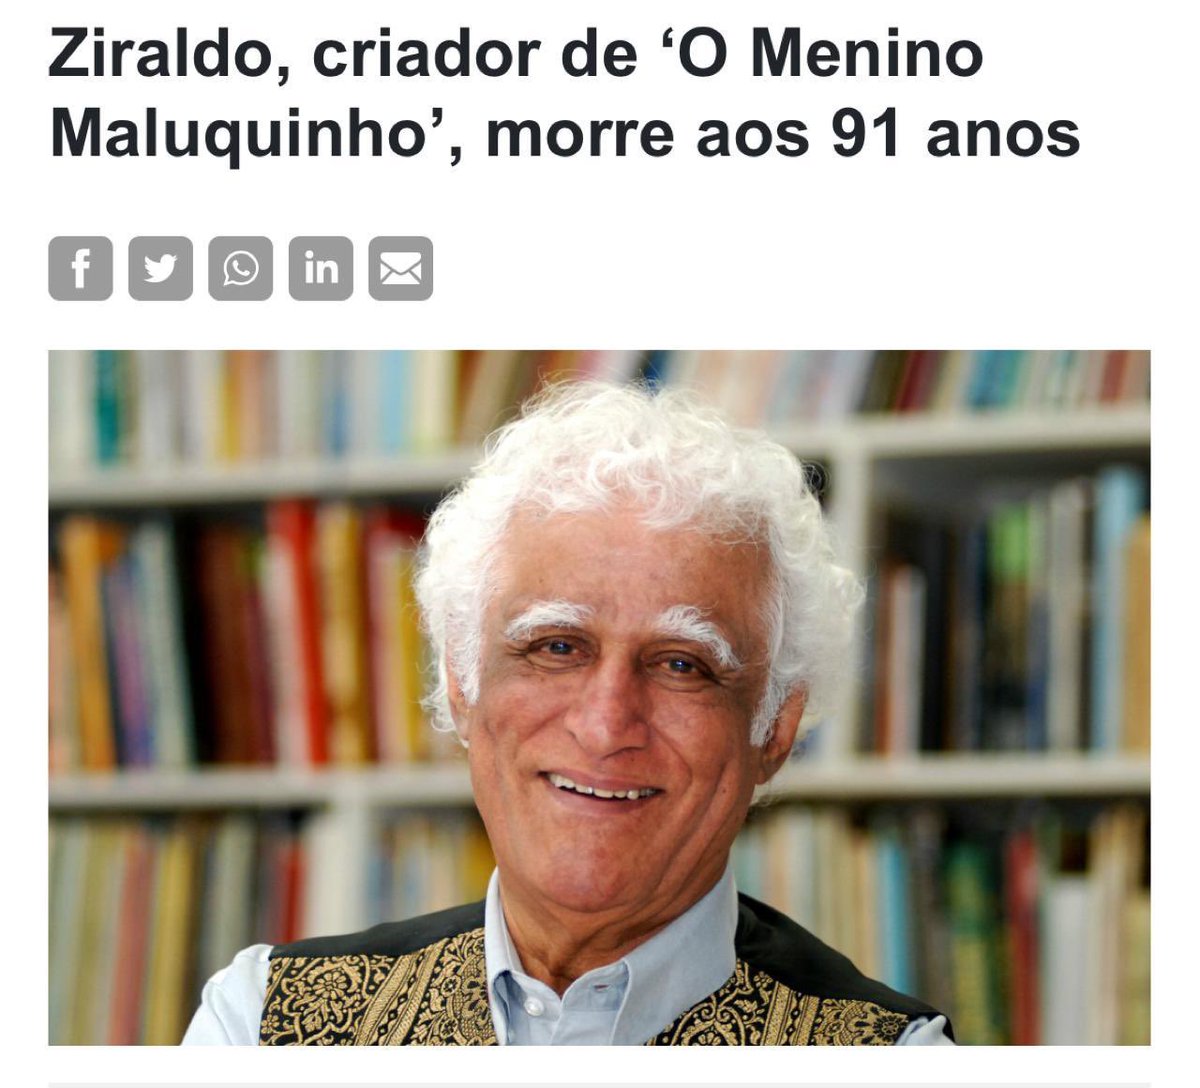 Ziraldo foi um dos escritores que melhor traduziu a mineiridade, com seus encantos , lirismos e contradições. Descansou o artista. Mas sua obra segue viva ❤️